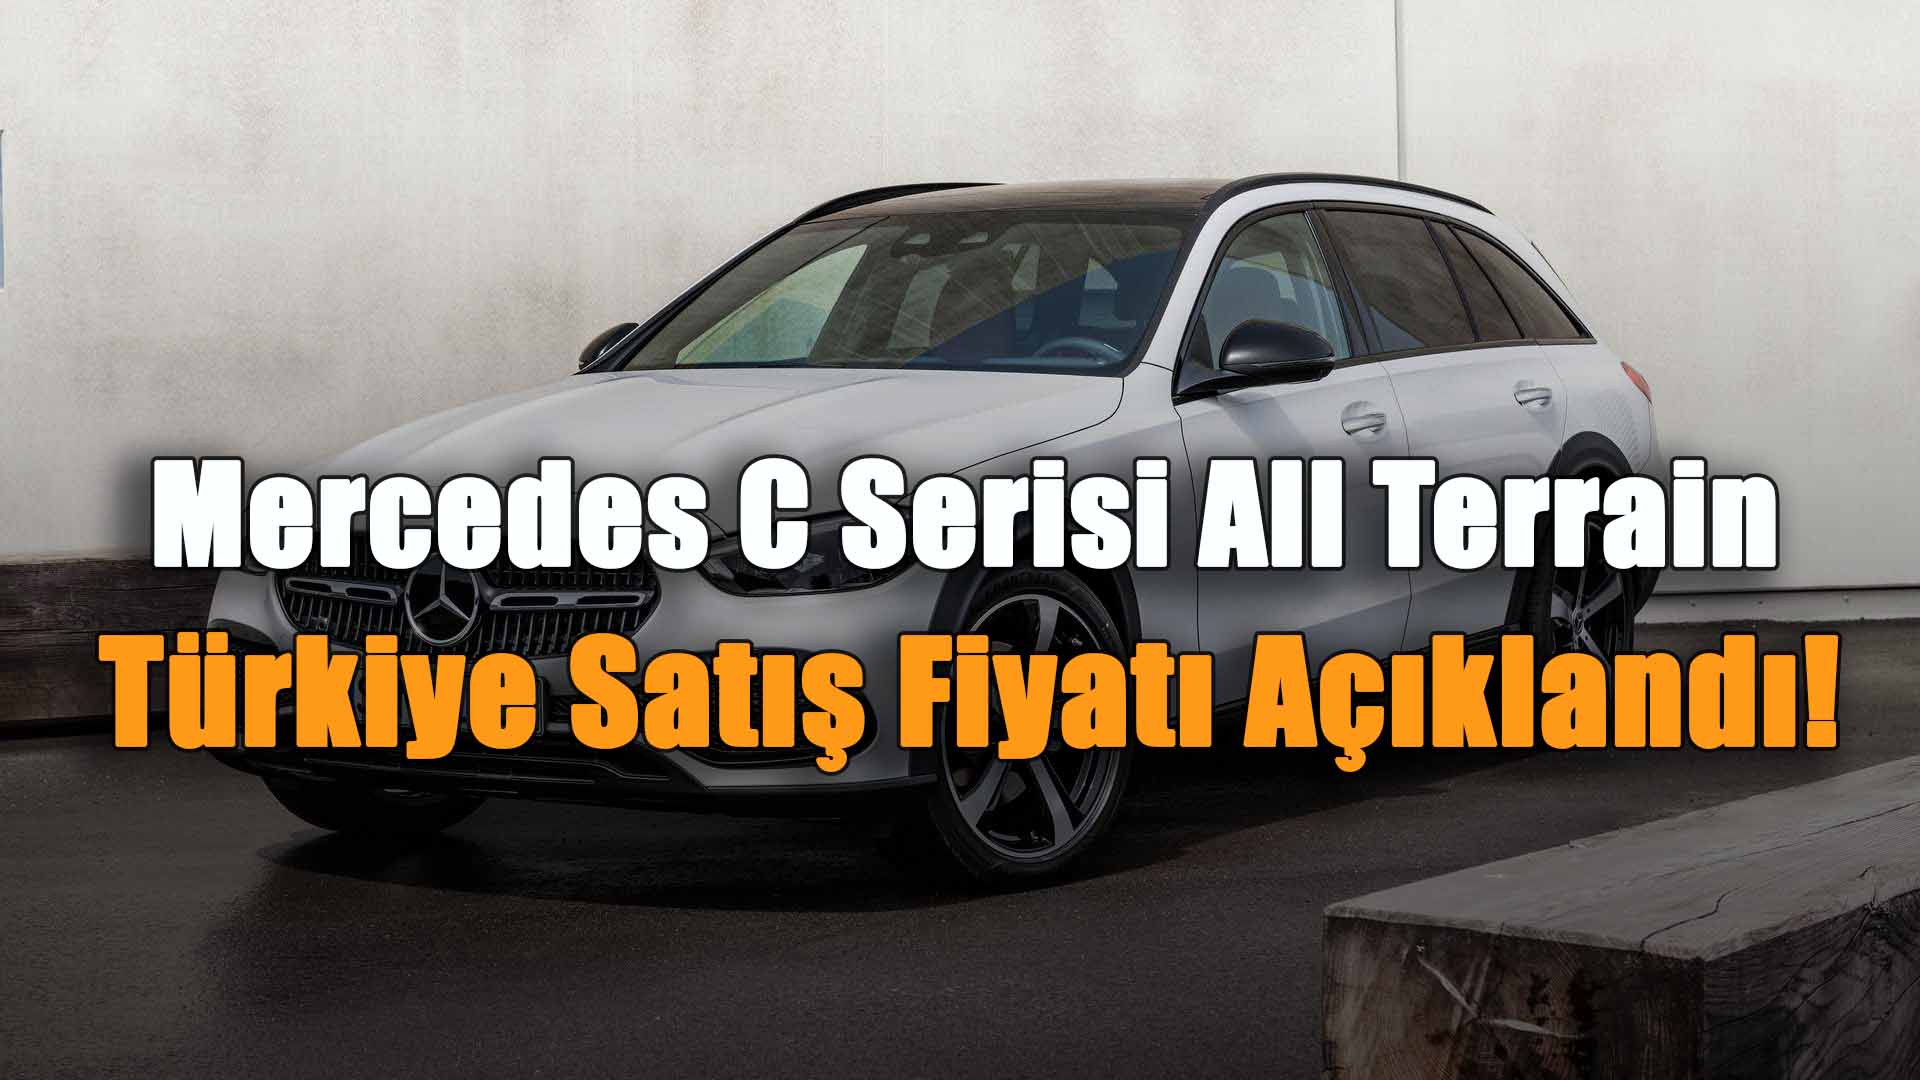 Mercedes C Serisi All Terrain Türkiye Satış Fiyatı Açıklandı!